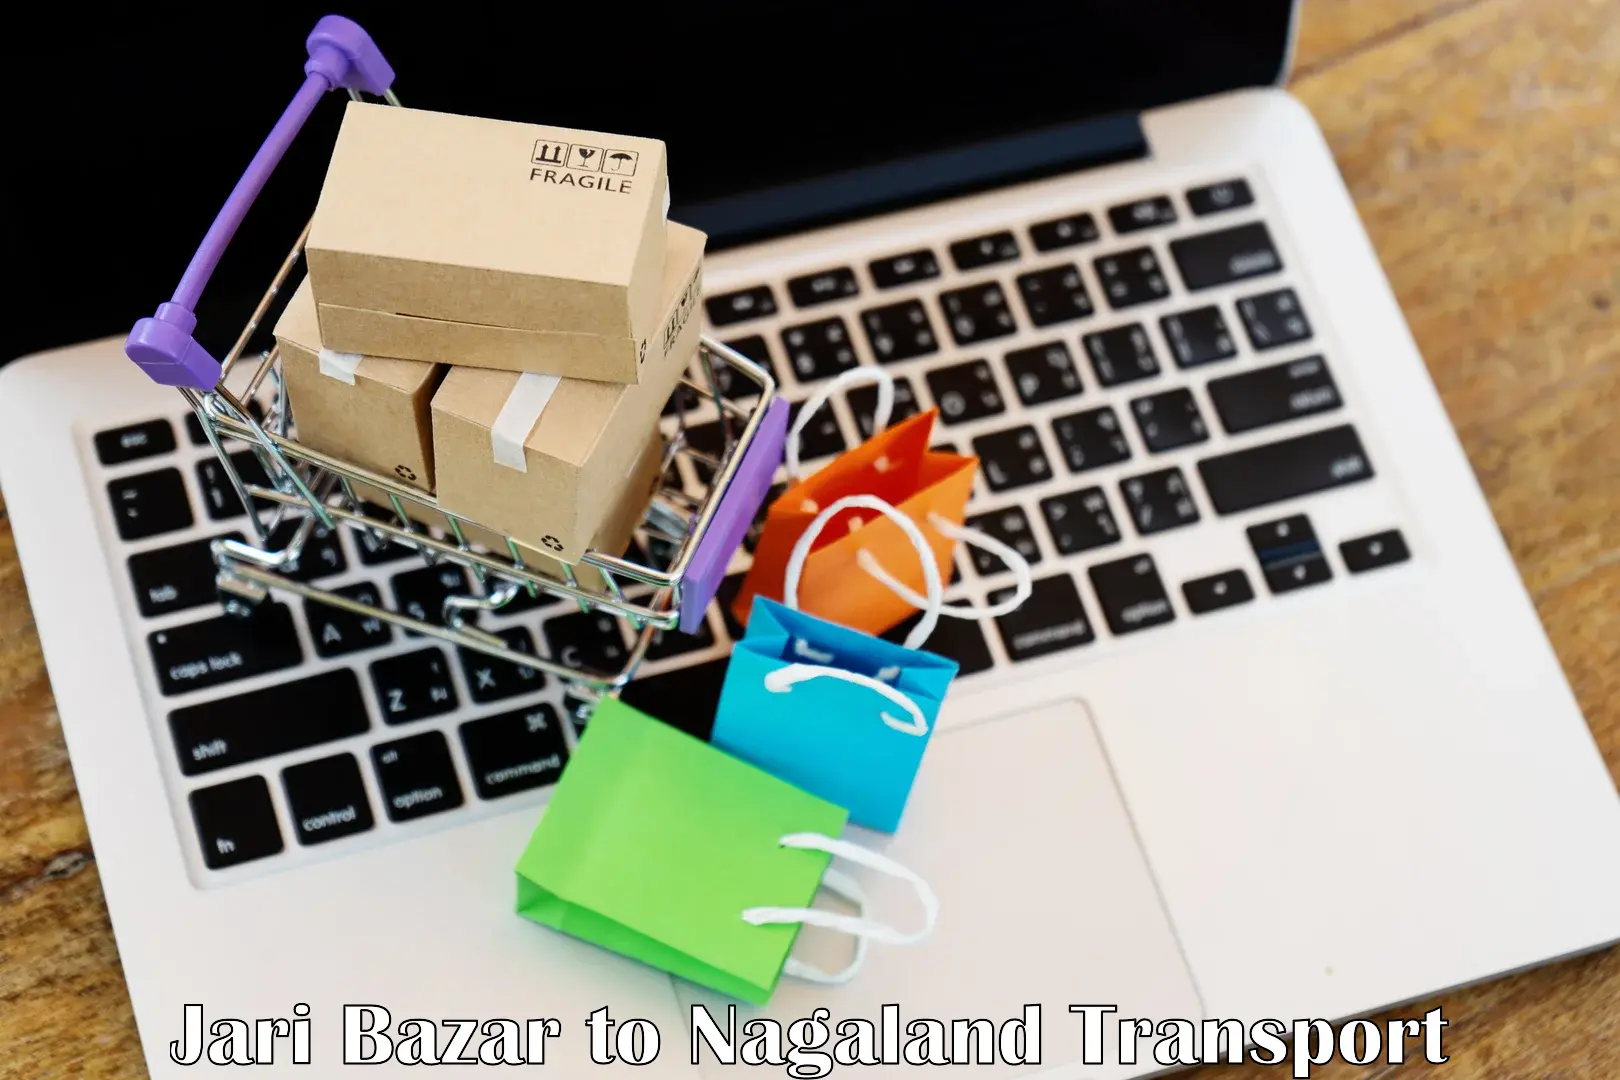 Parcel transport services Jari Bazar to NIT Nagaland